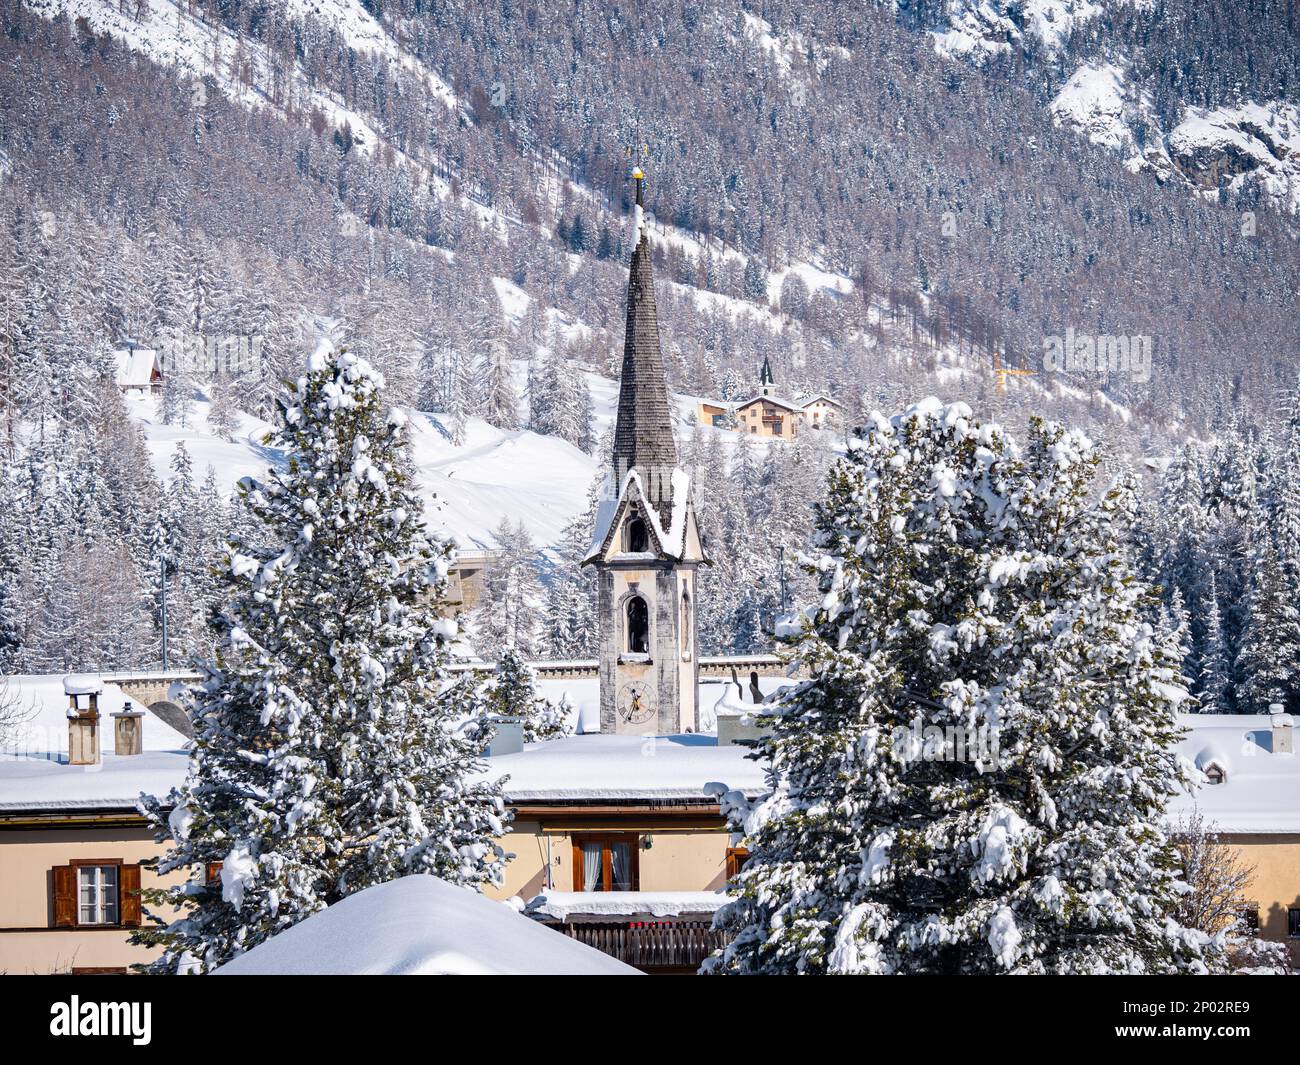 Winterblick auf einem Glockenturm einer reformierten Kirche in einem schneebedeckten Dorf Cinuos Chel in Engadine, Grisons, Schweiz. Stockfoto